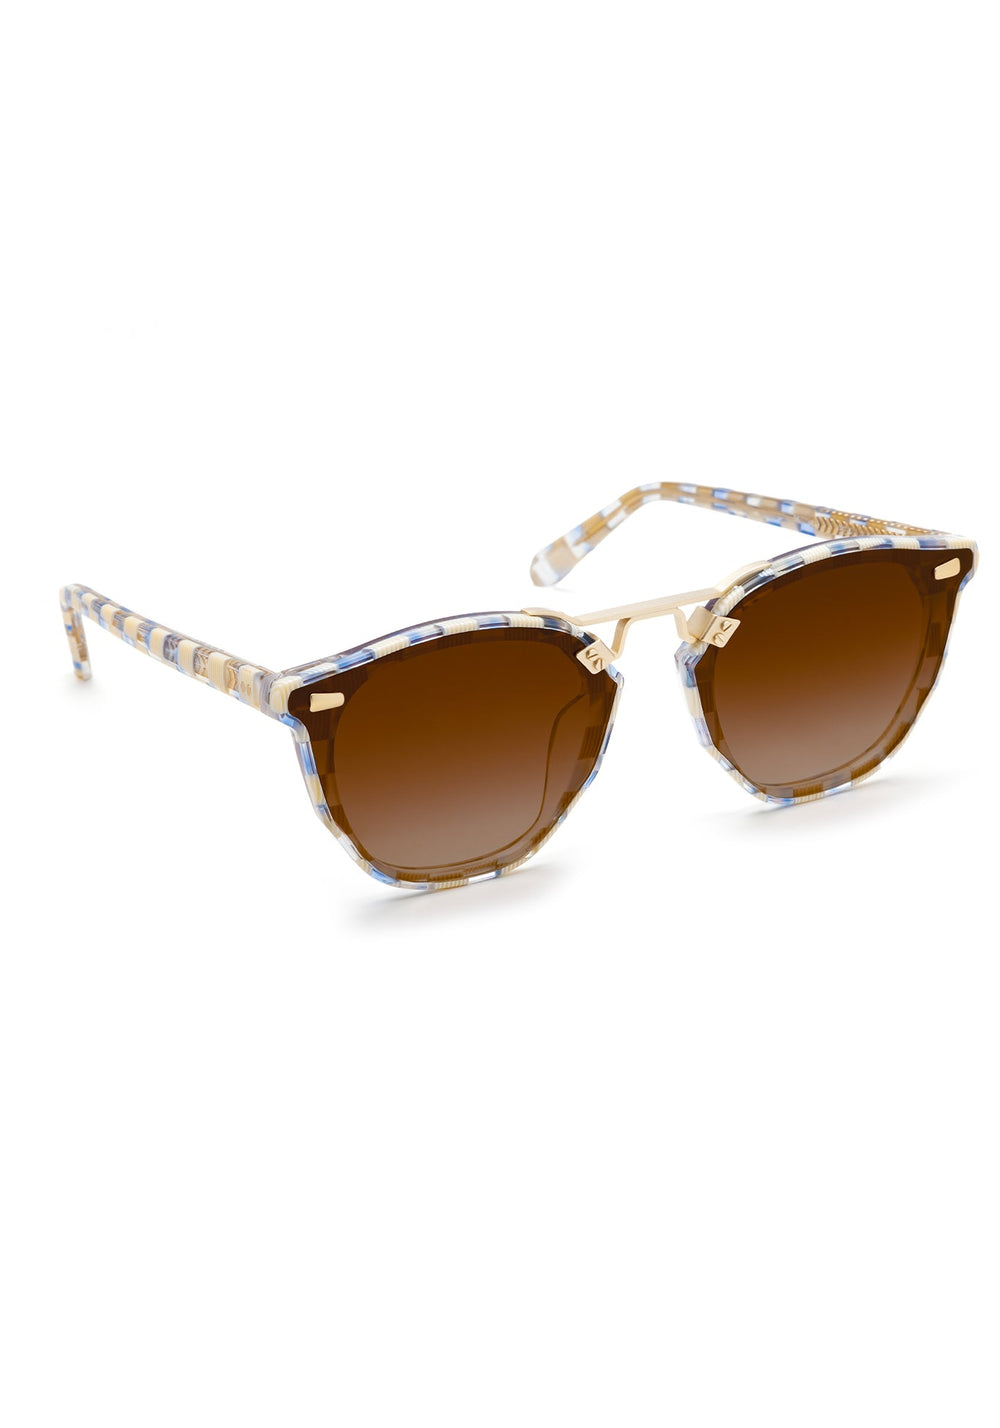 BEAU NYLON | Gingham 12K  Luxury Blue and White Acetate Sunglasses